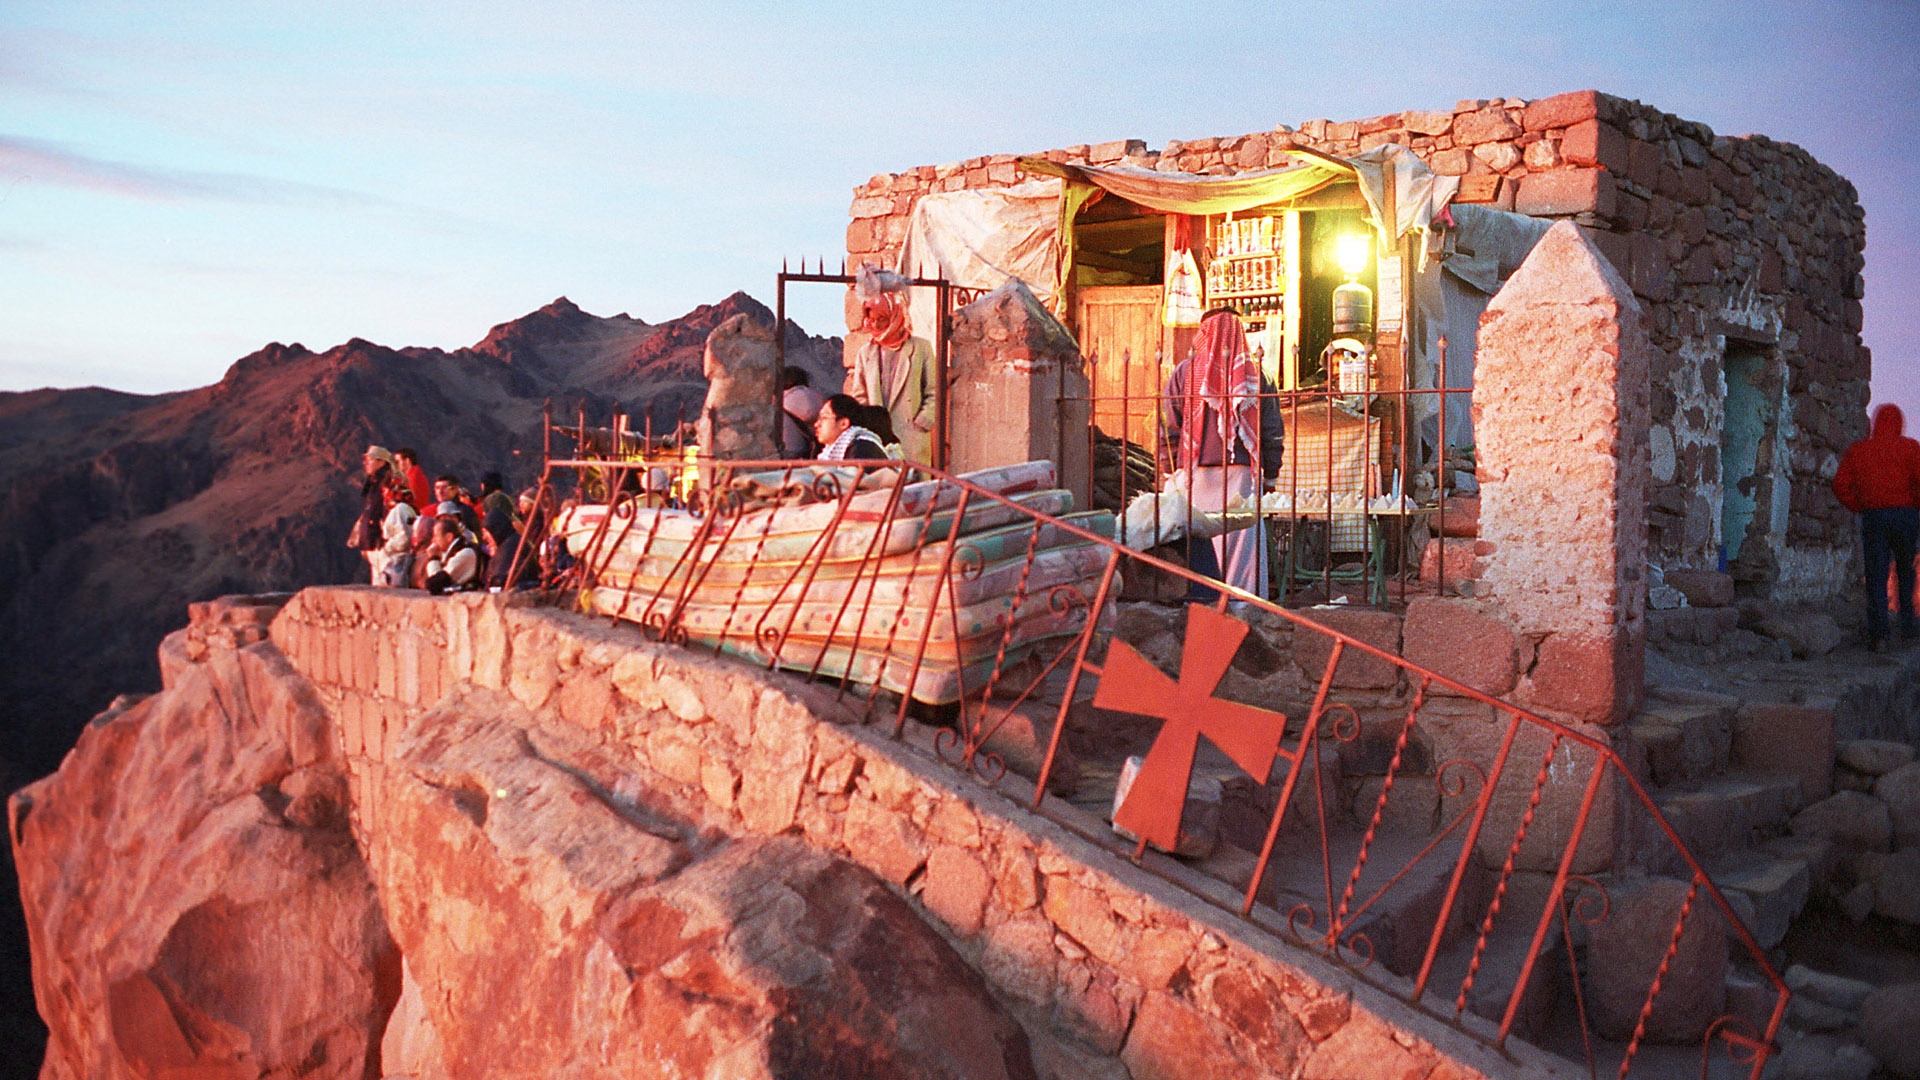 Hütte auf dem Berg Sinai bei Sonnenaufgang, Ägypten.